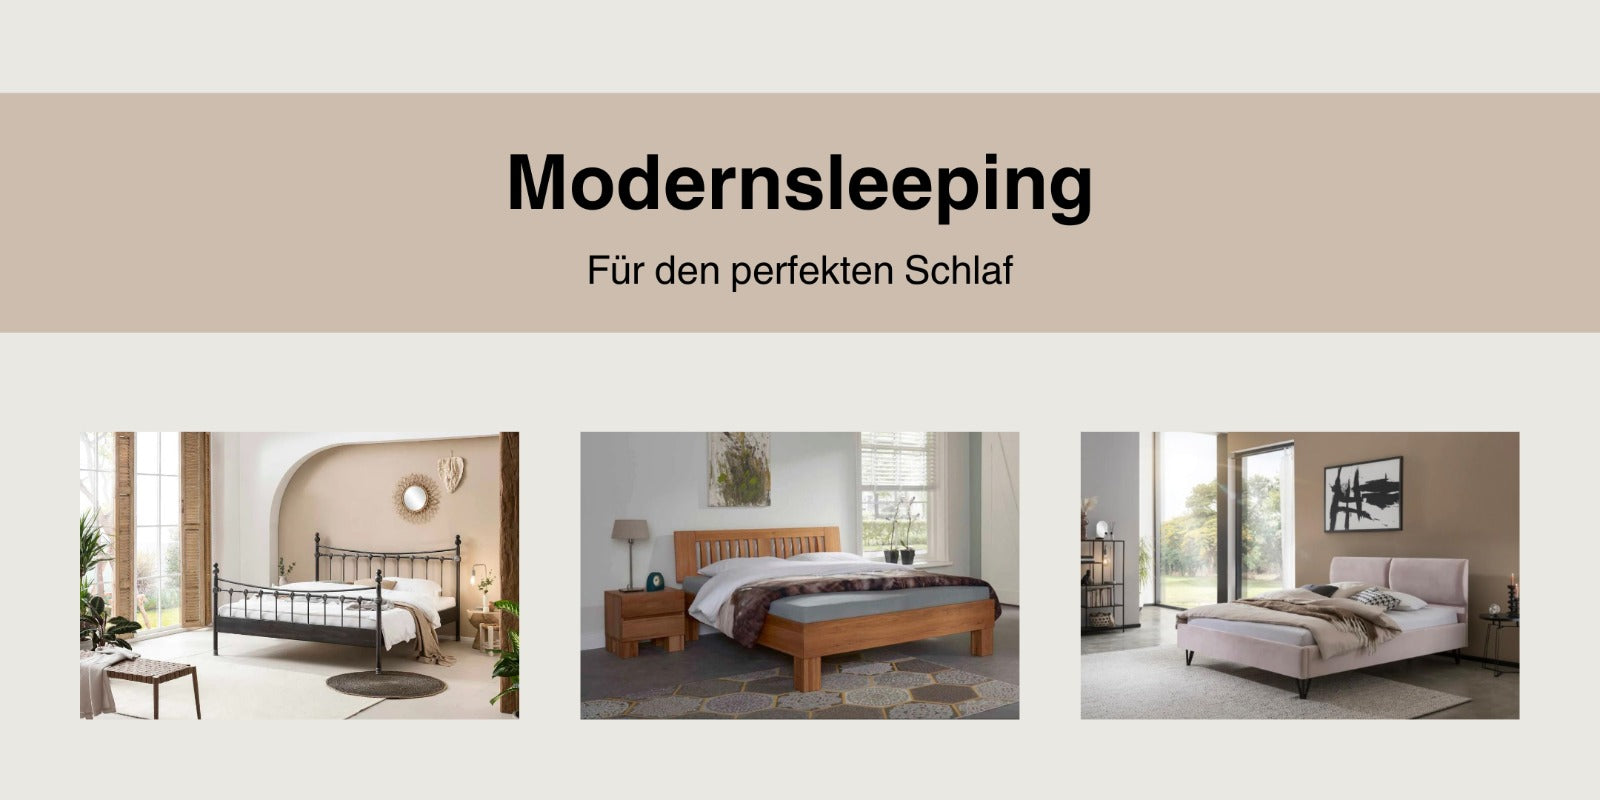 modernsleeping-für den perfekten schlaf